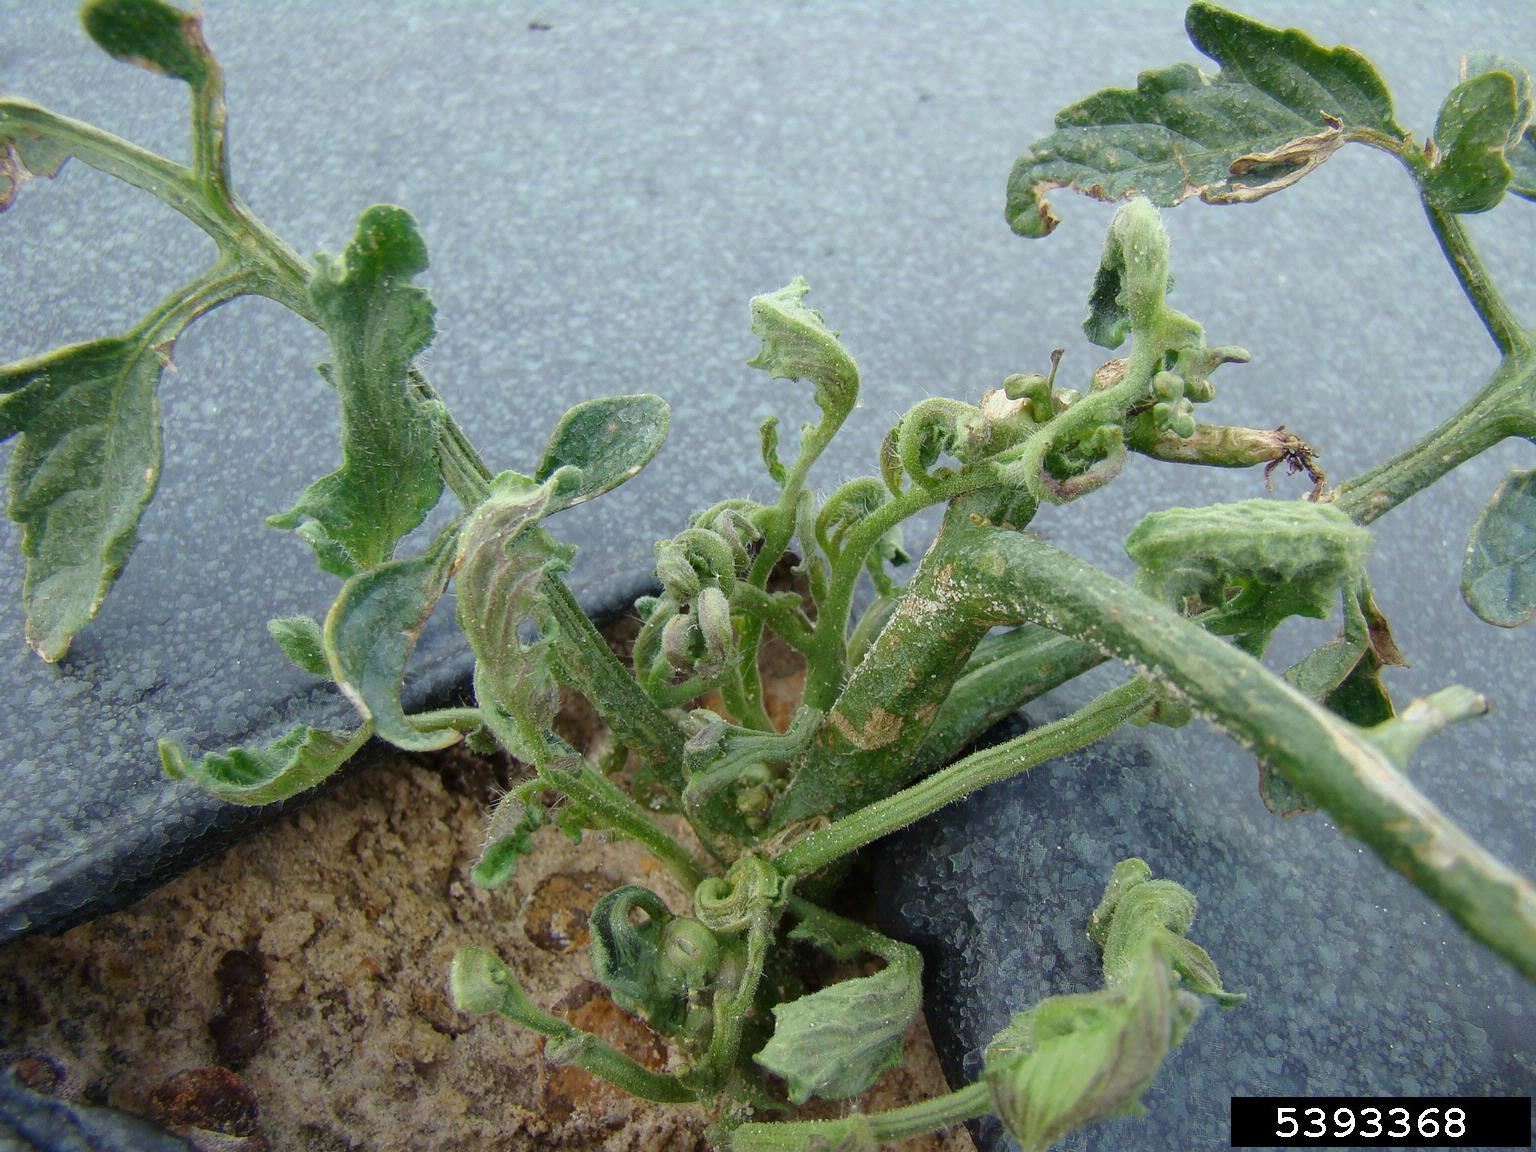 herbicide damage on a tomato transplant